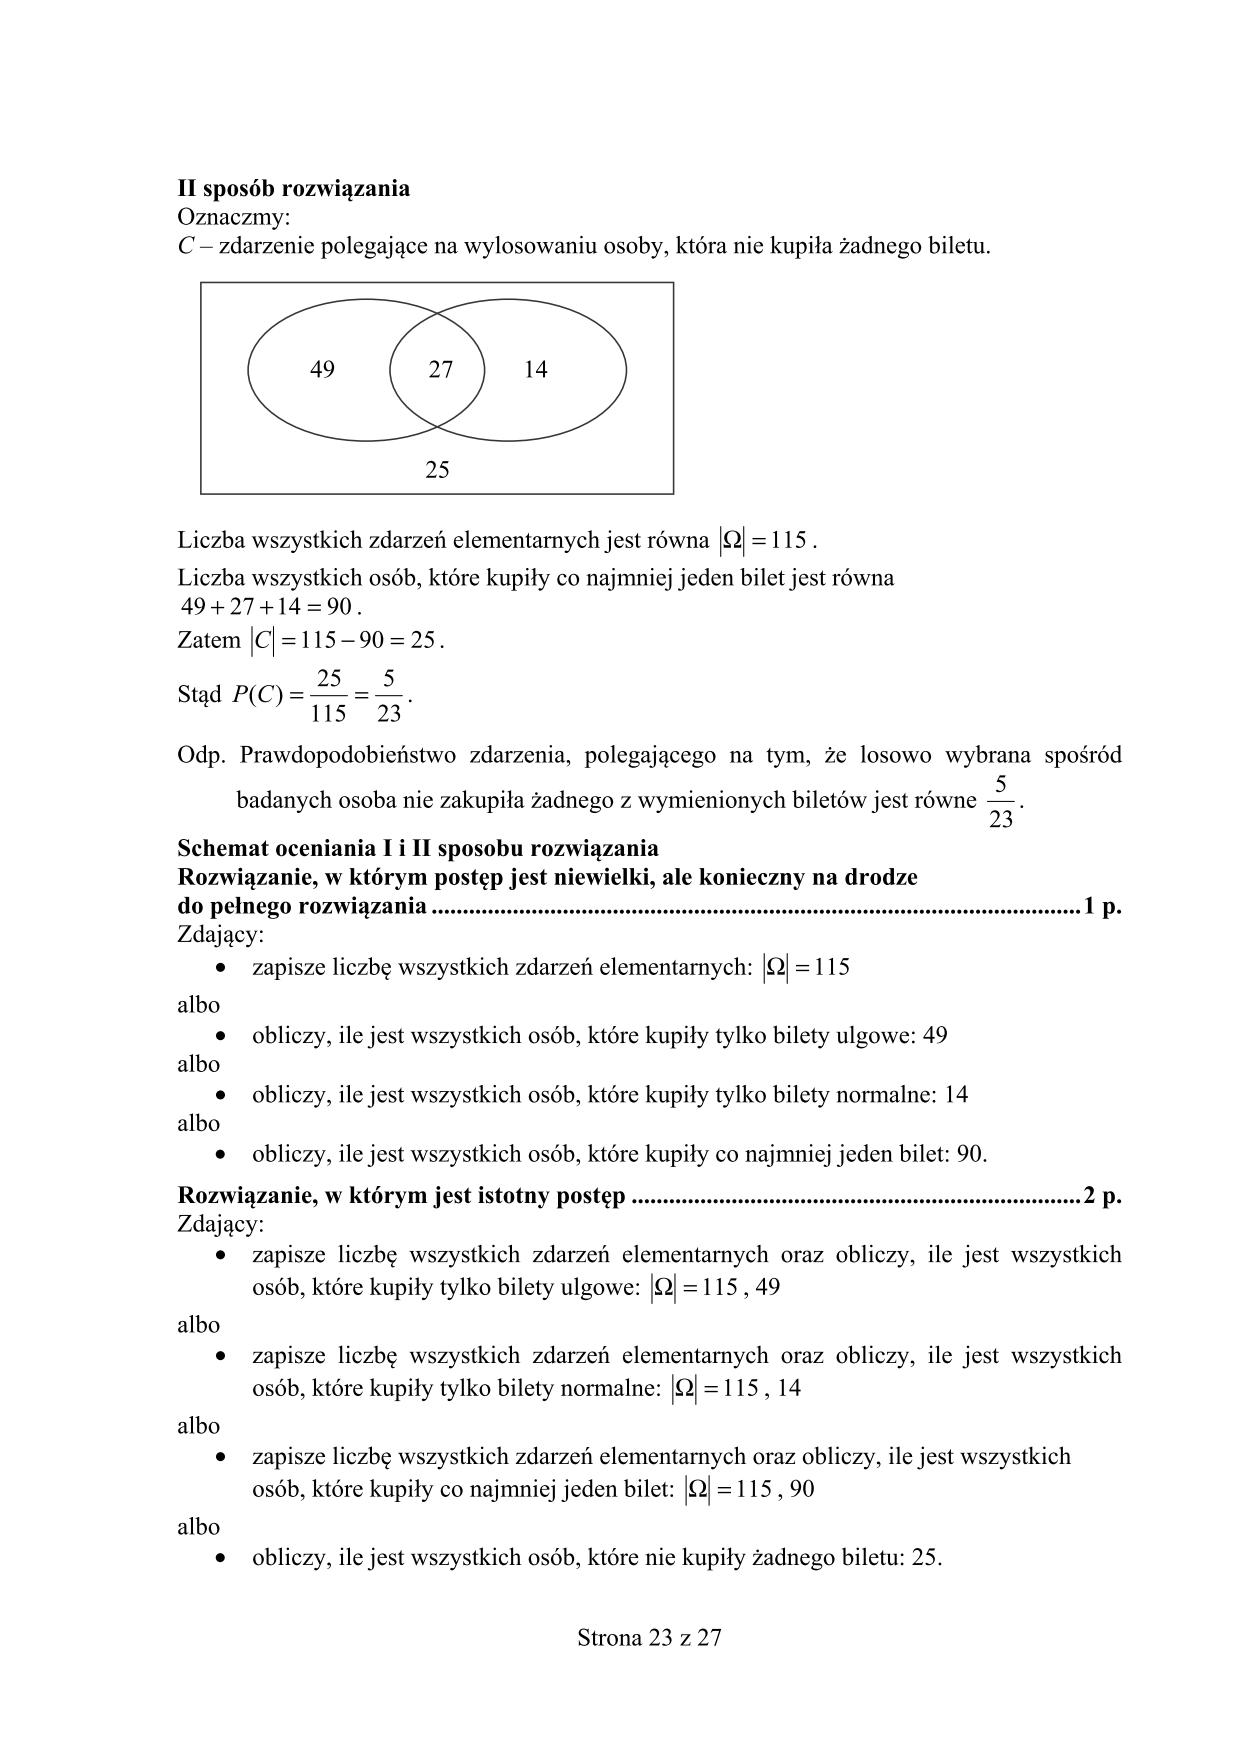 odpowiedzi-matematyka-poziom-podstawowy-matura-2015-23